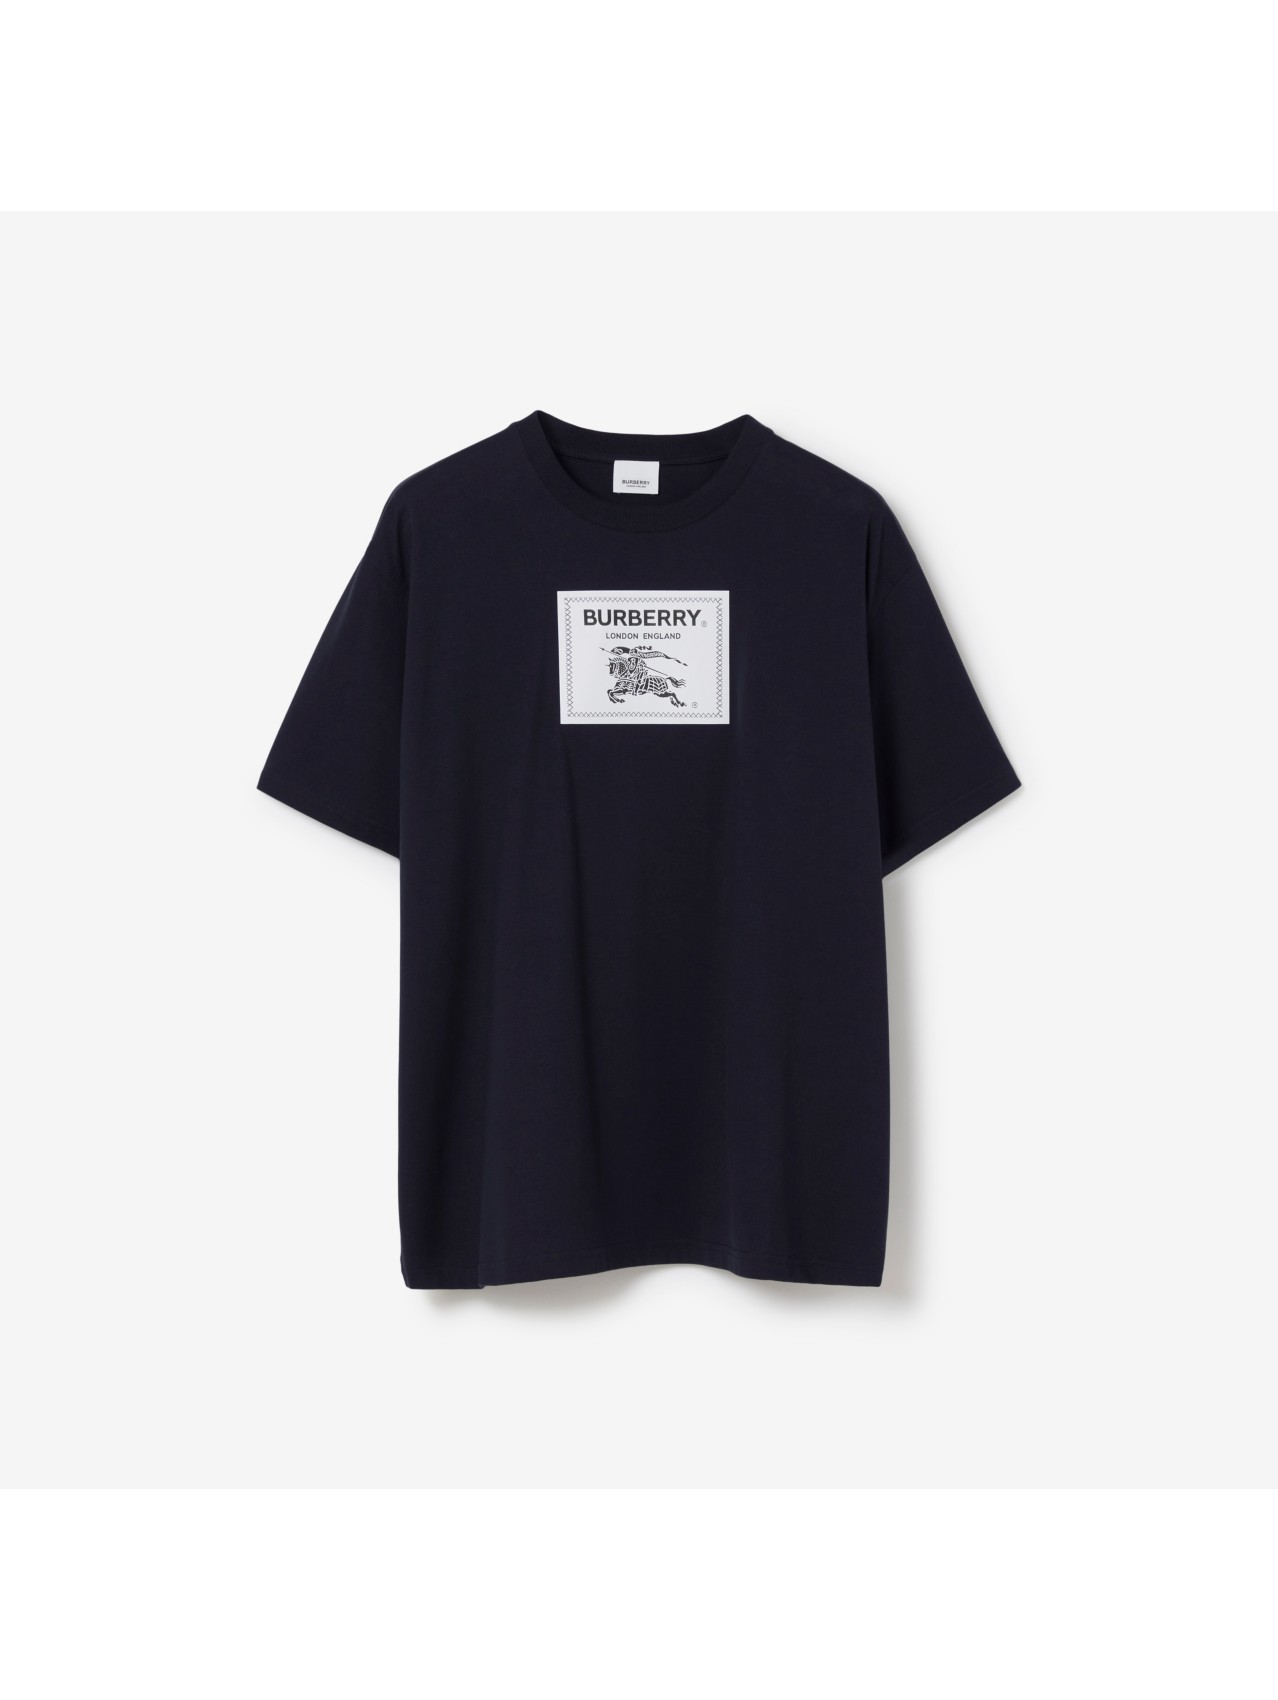 Prorsum Label Cotton T-shirt in Black - Men | Burberry® Official